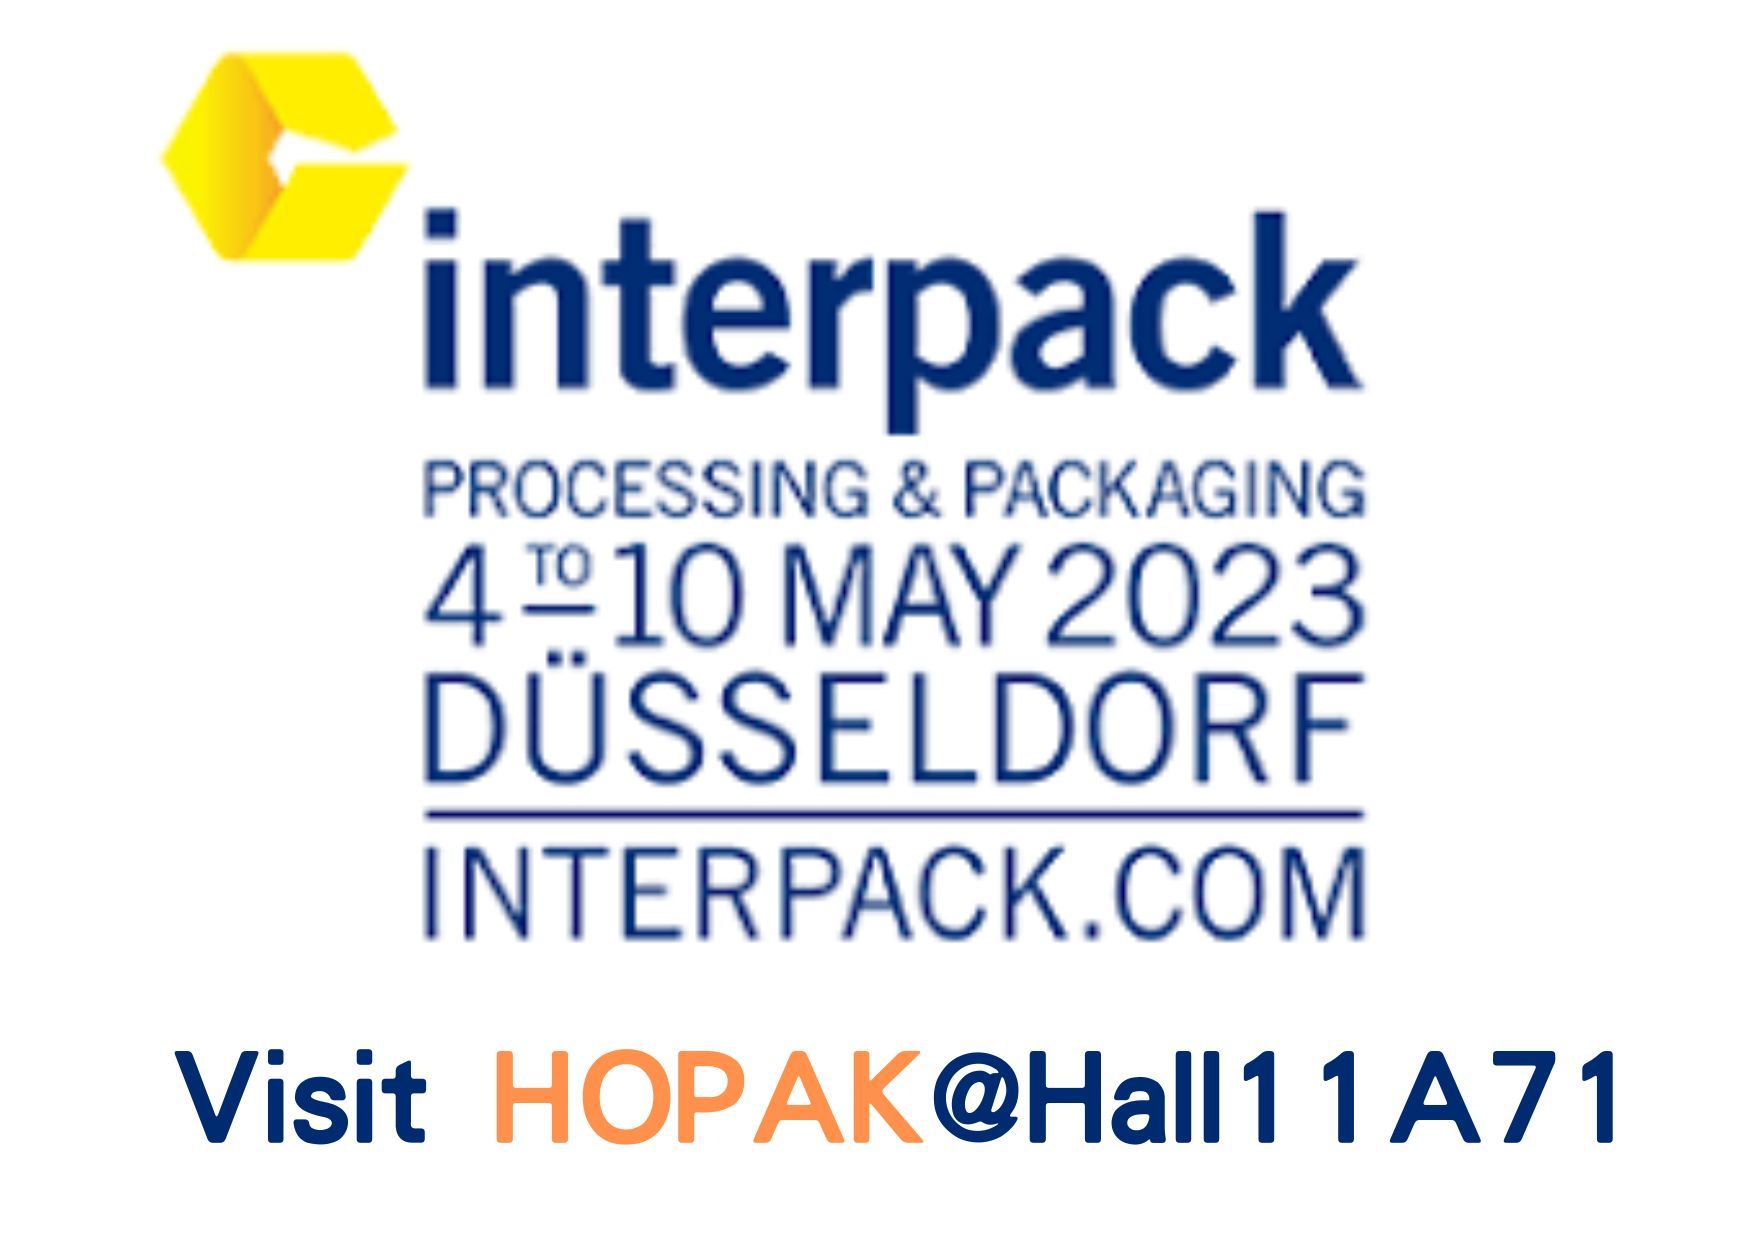 2023 ドイツInterpackパッケージングと設備展示会